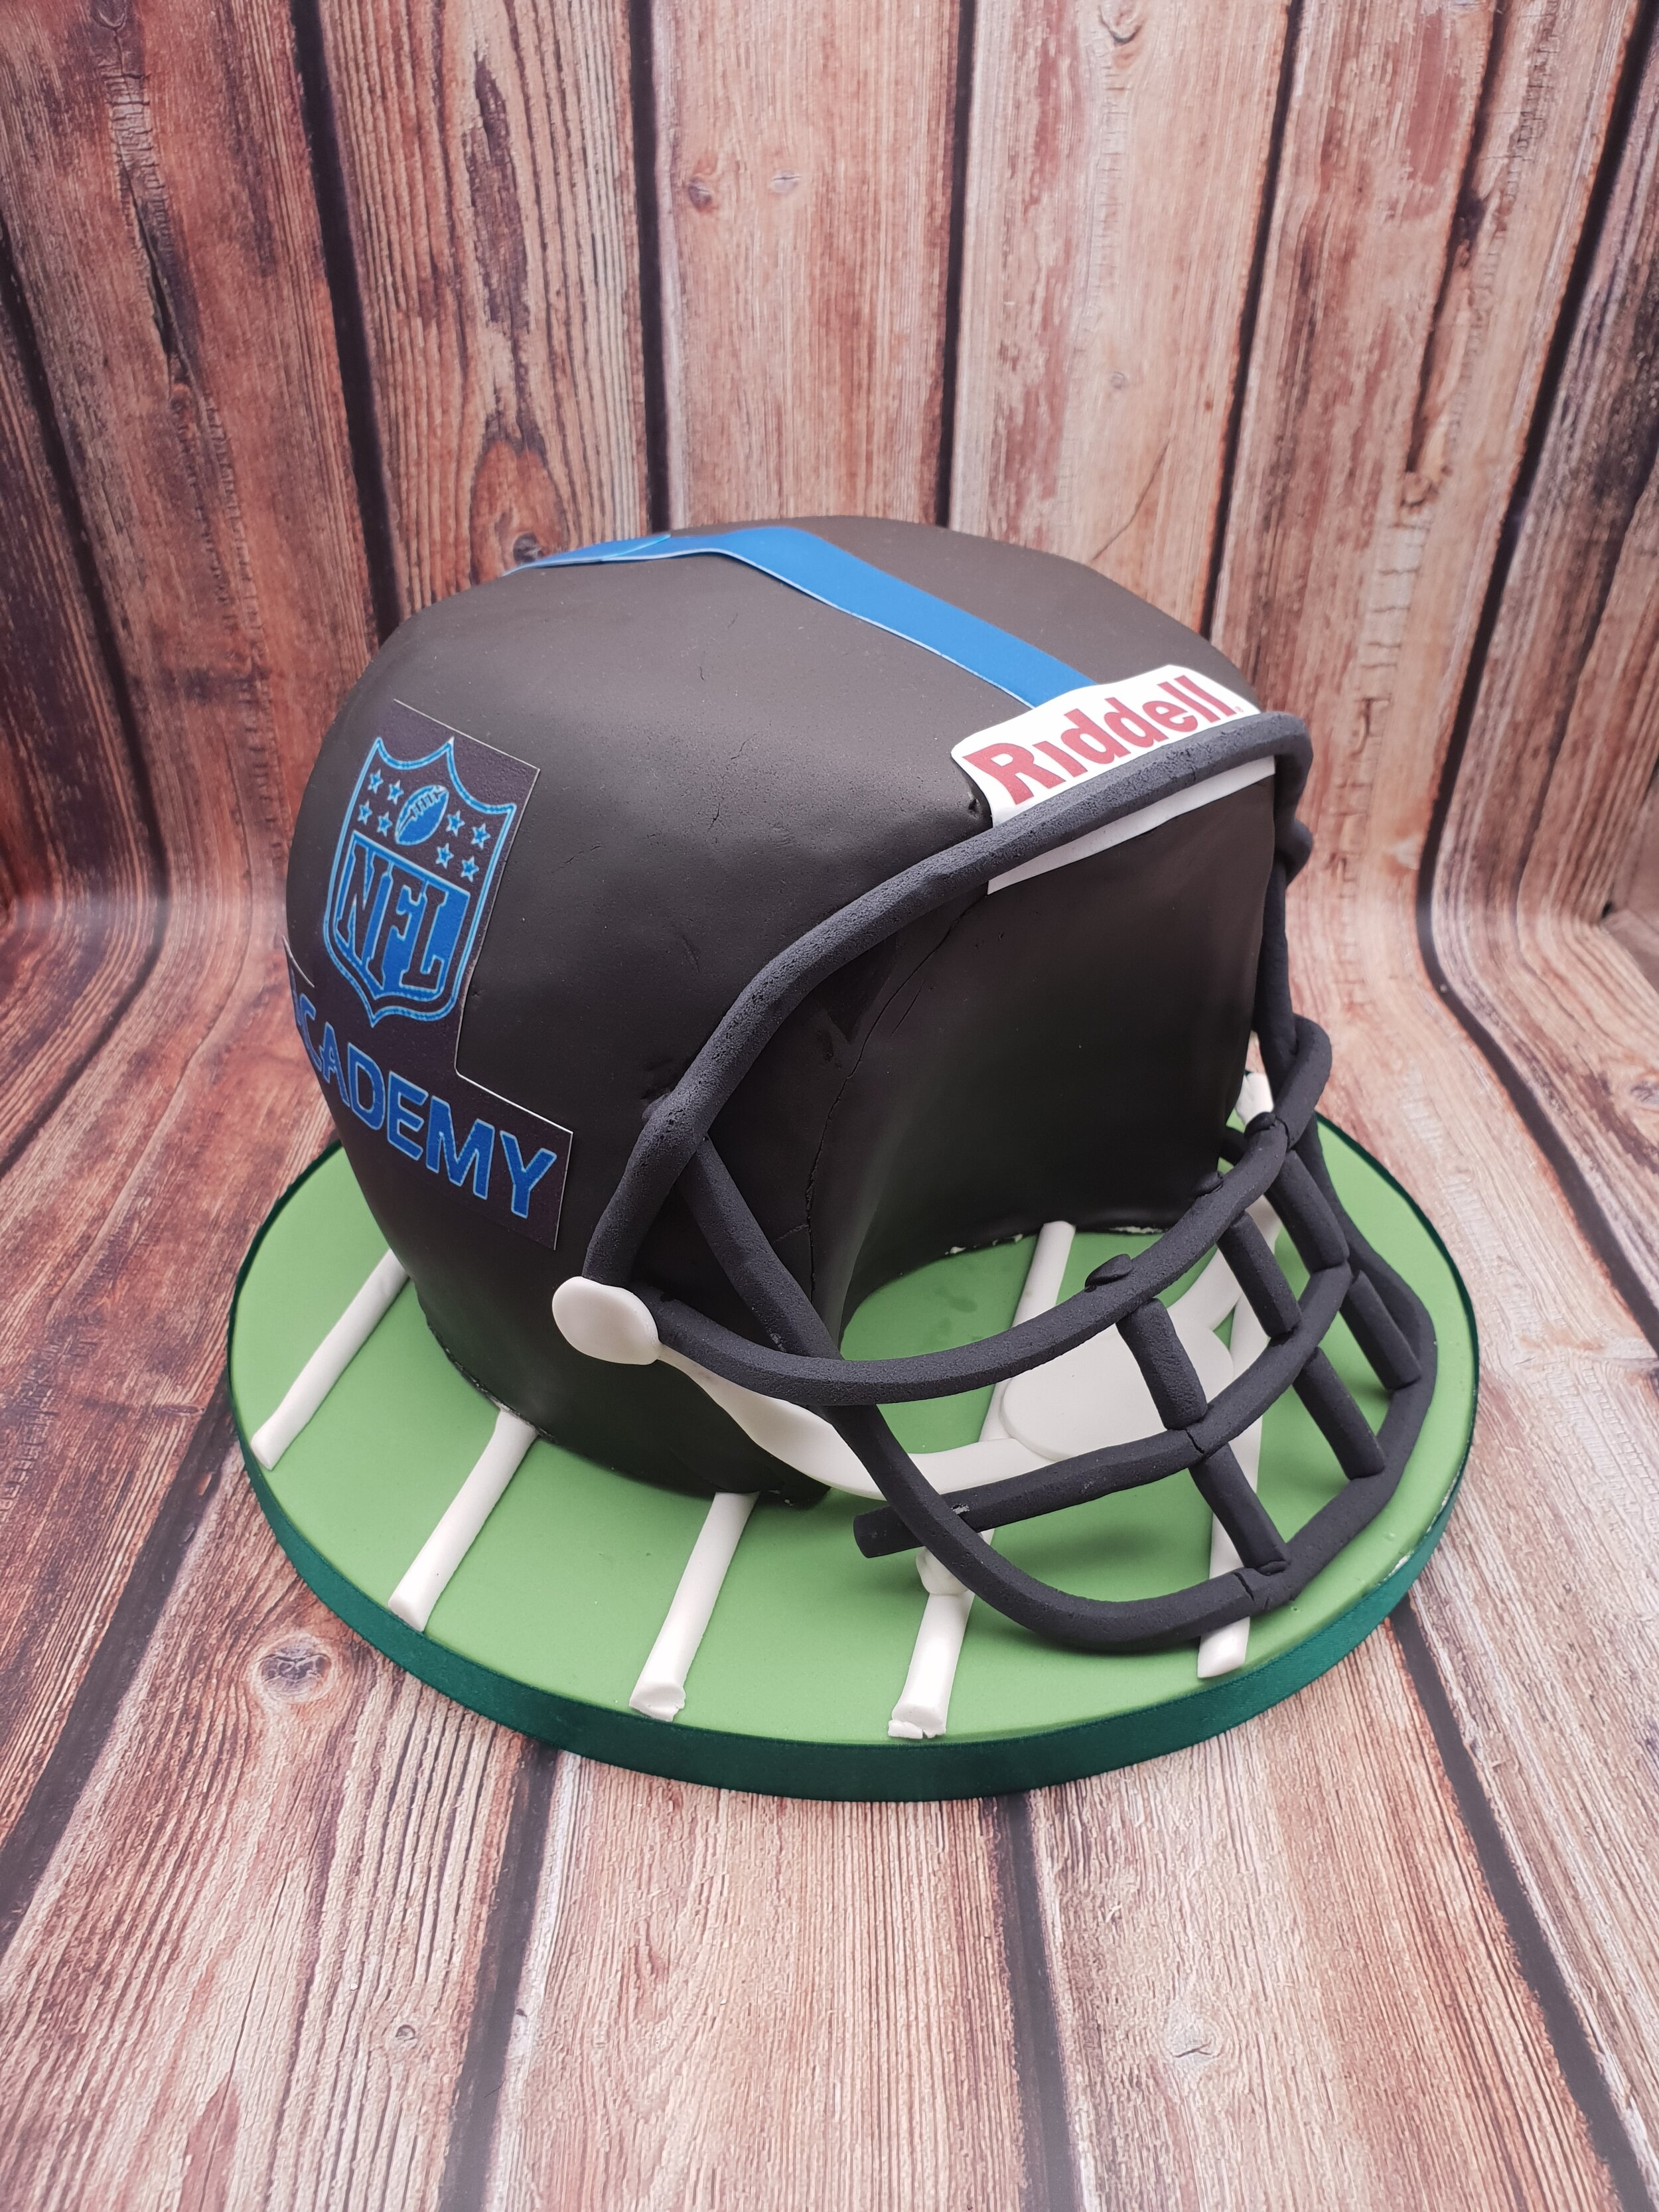 american football helmet cake.jpg